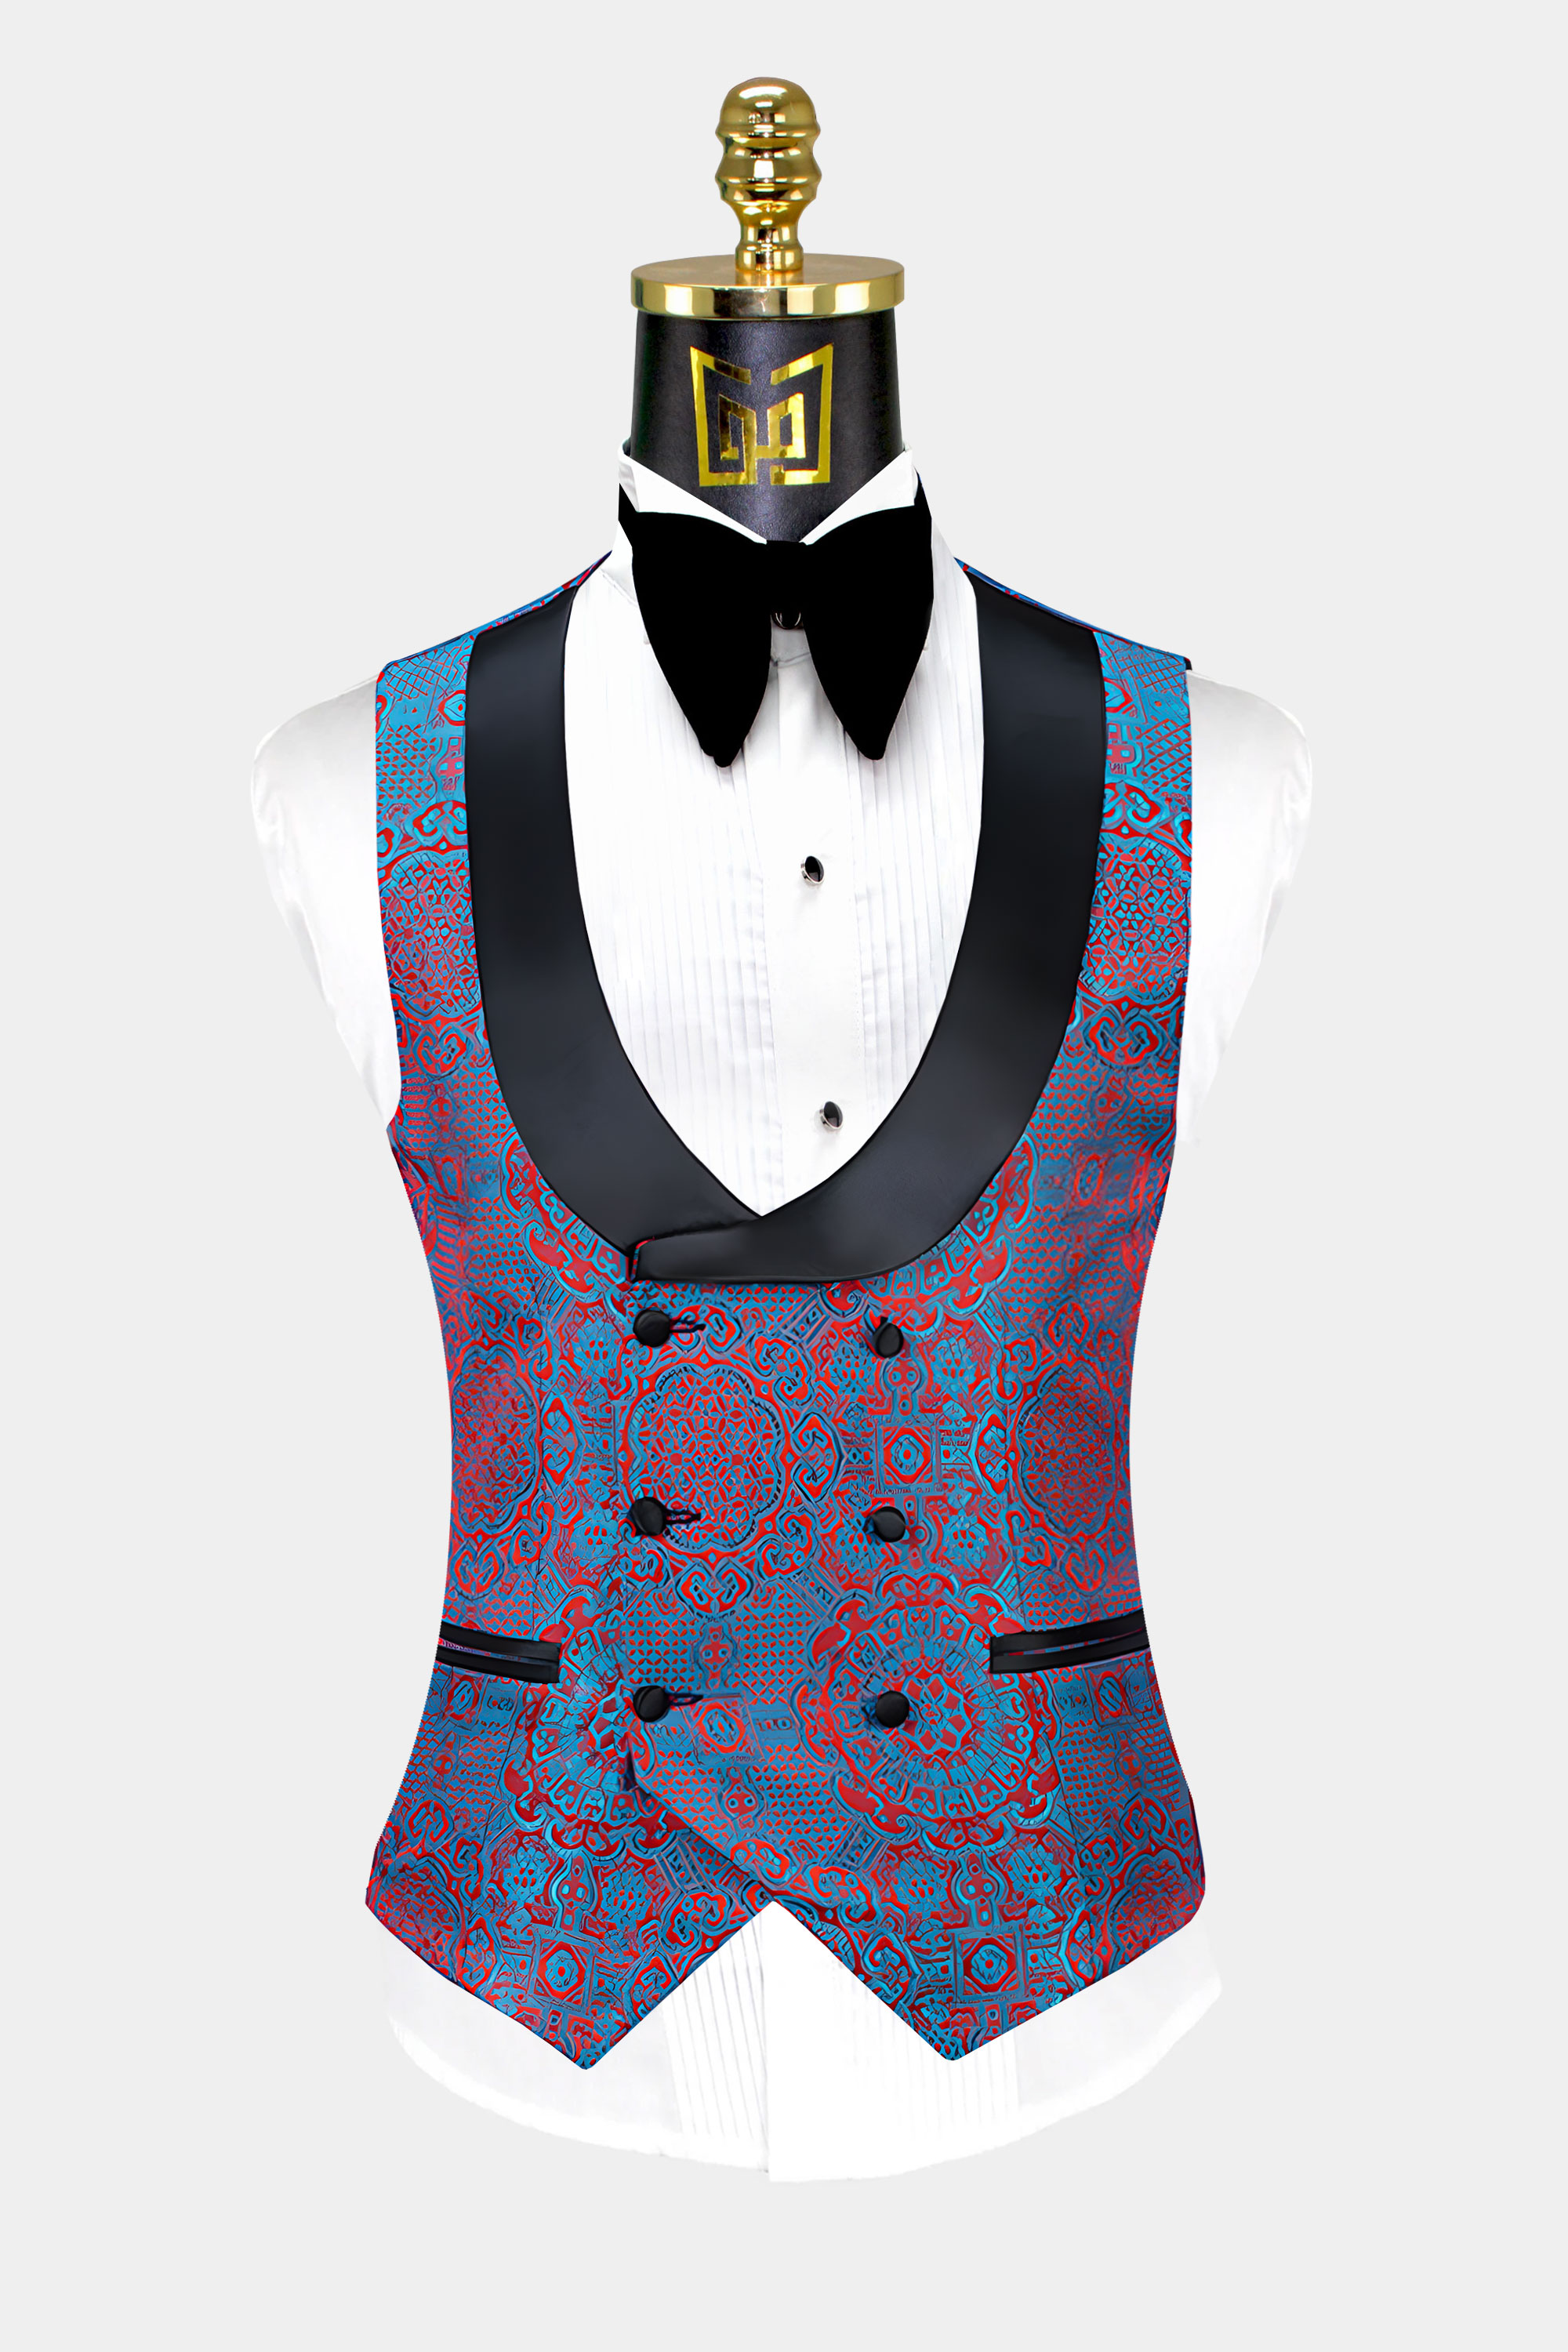 Blue-and-Red-Tuxedo-Vest-from-Gentlemansguru.com